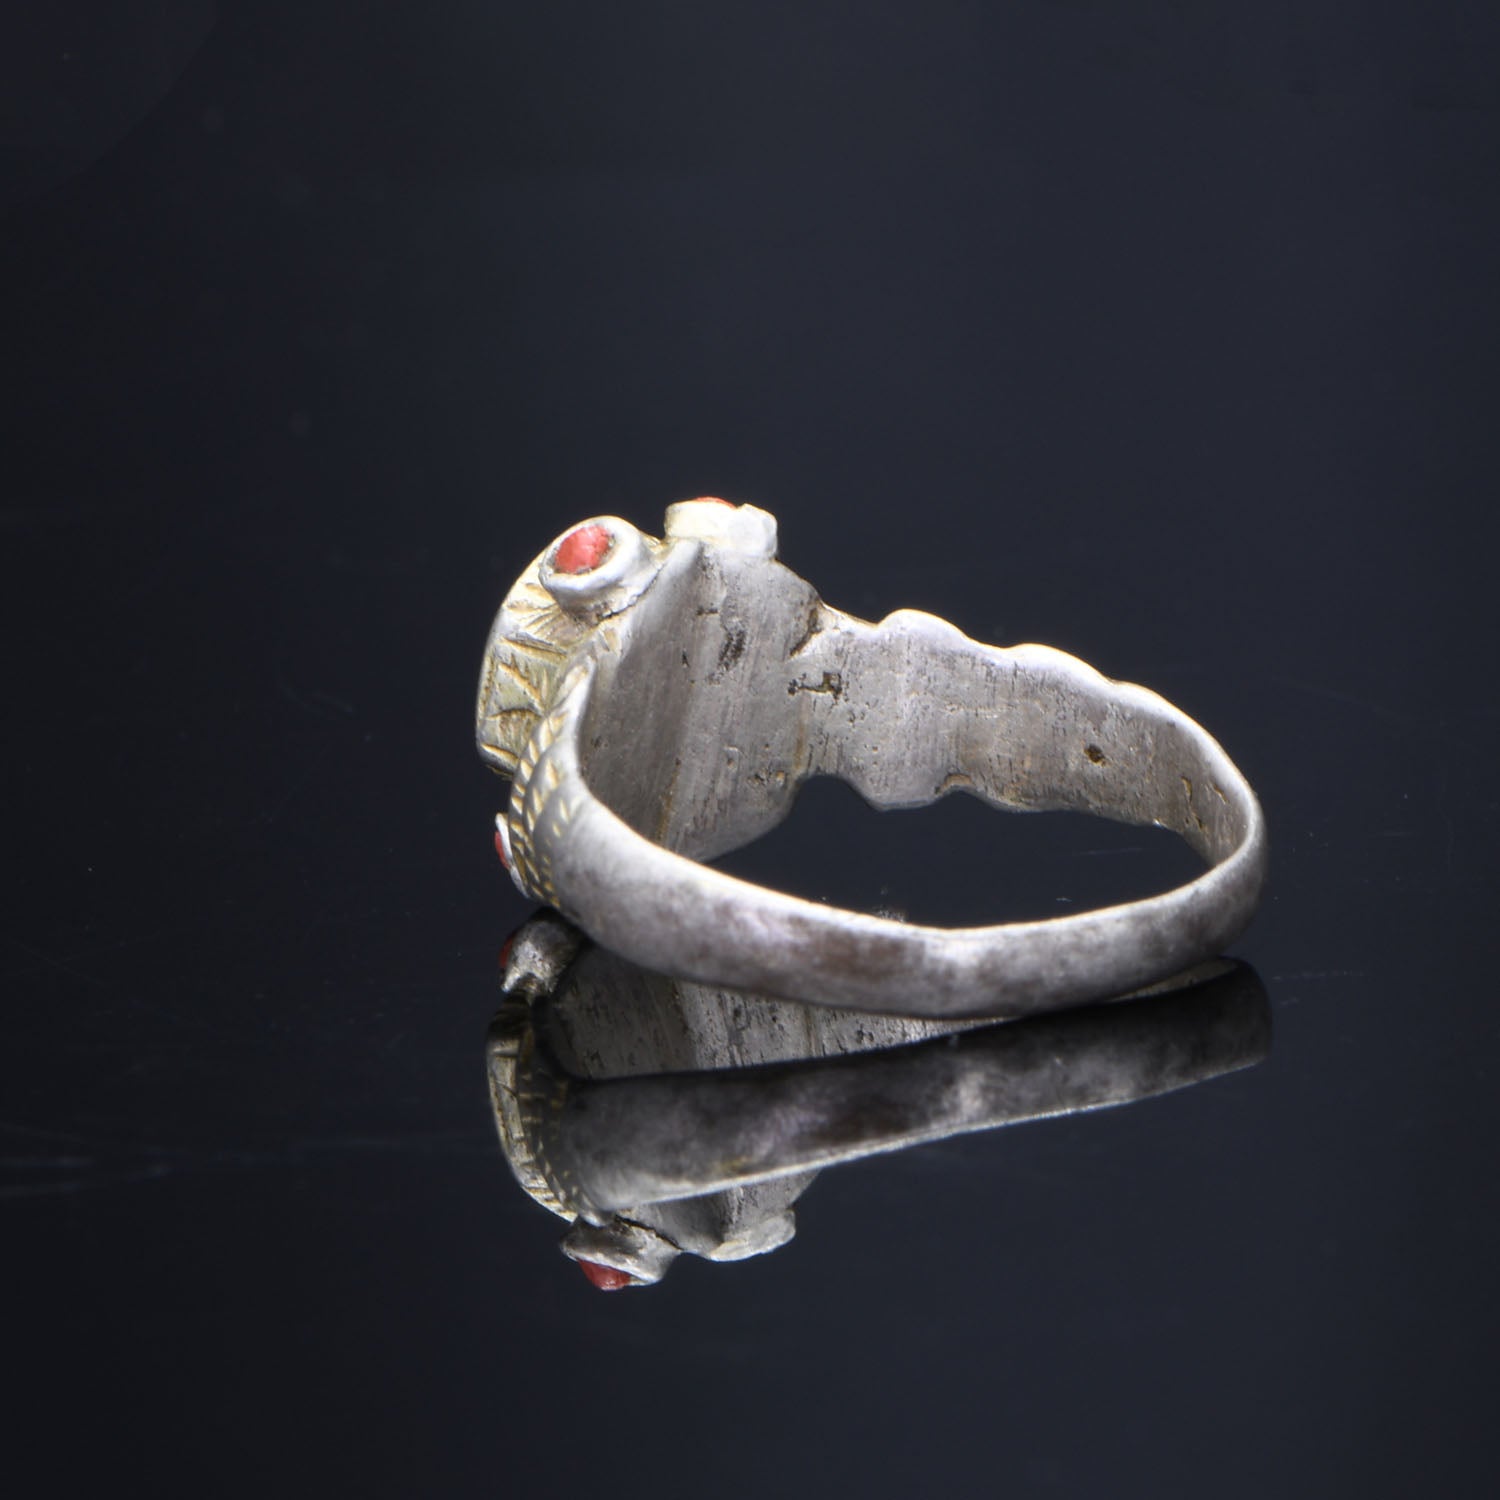 A Medieval Silver Gilt Ring with Stones, <br><em>ca. 1100 - 1300 CE</em>